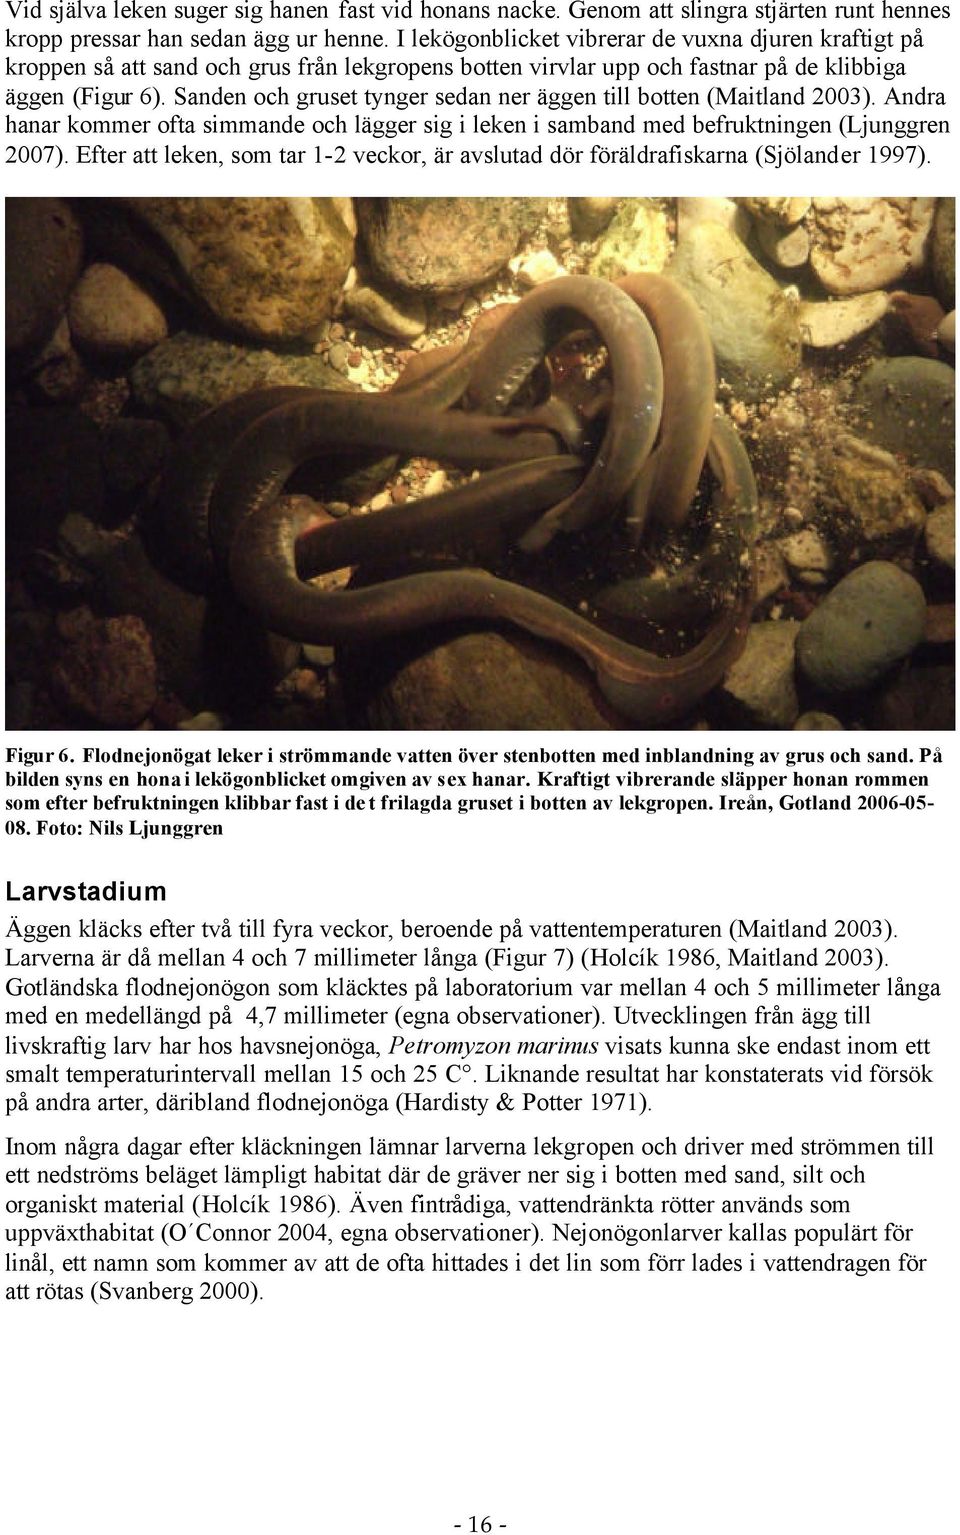 Sanden och gruset tynger sedan ner äggen till botten (Maitland 2003). Andra hanar kommer ofta simmande och lägger sig i leken i samband med befruktningen (Ljunggren 2007).